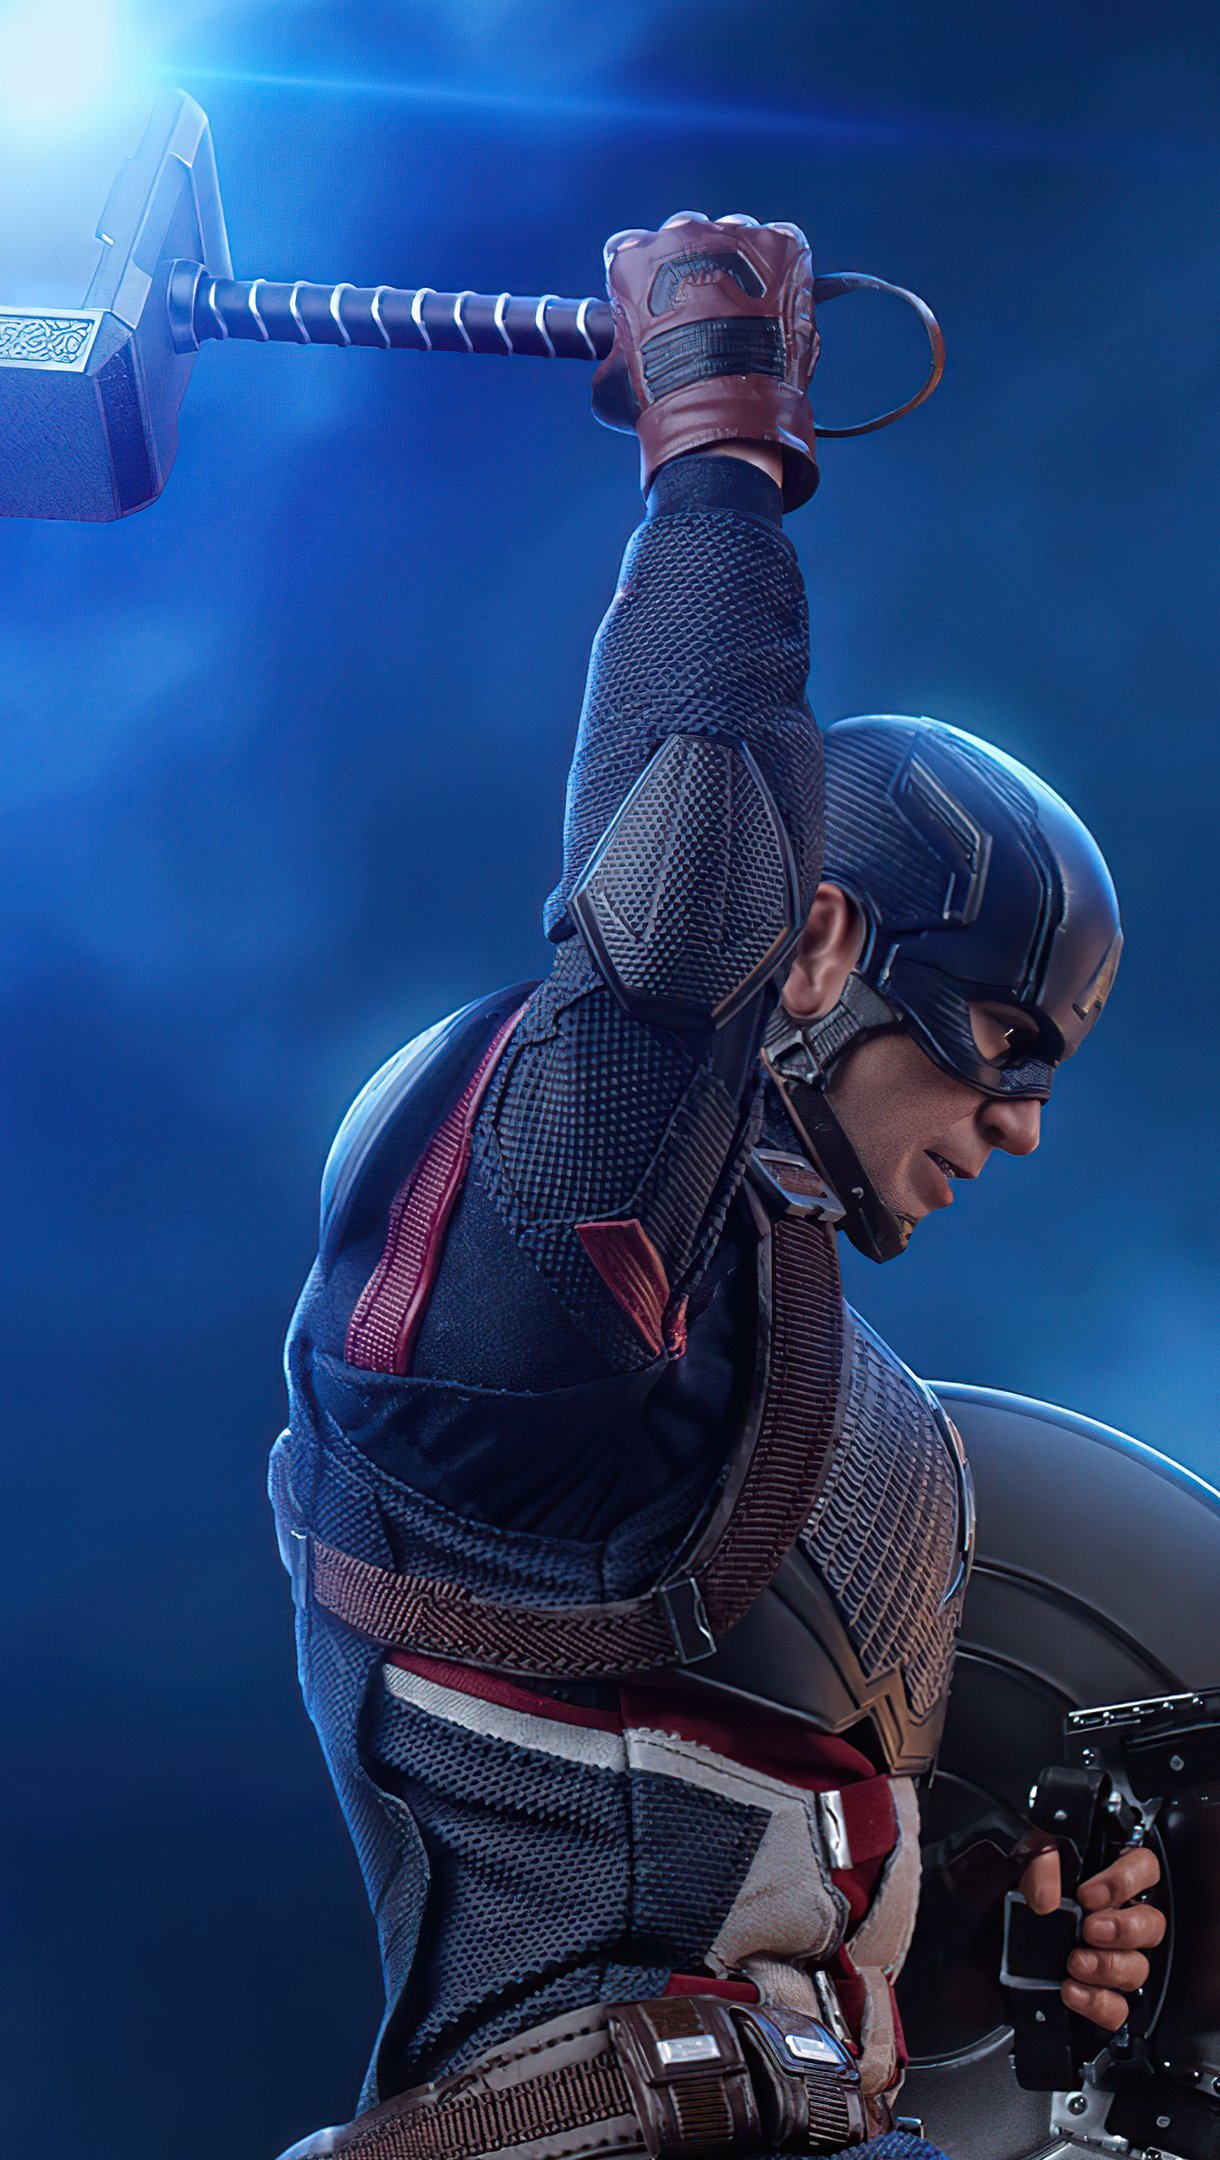 Fondos de pantalla Capitan America con martillo de Thor 2021 Vertical